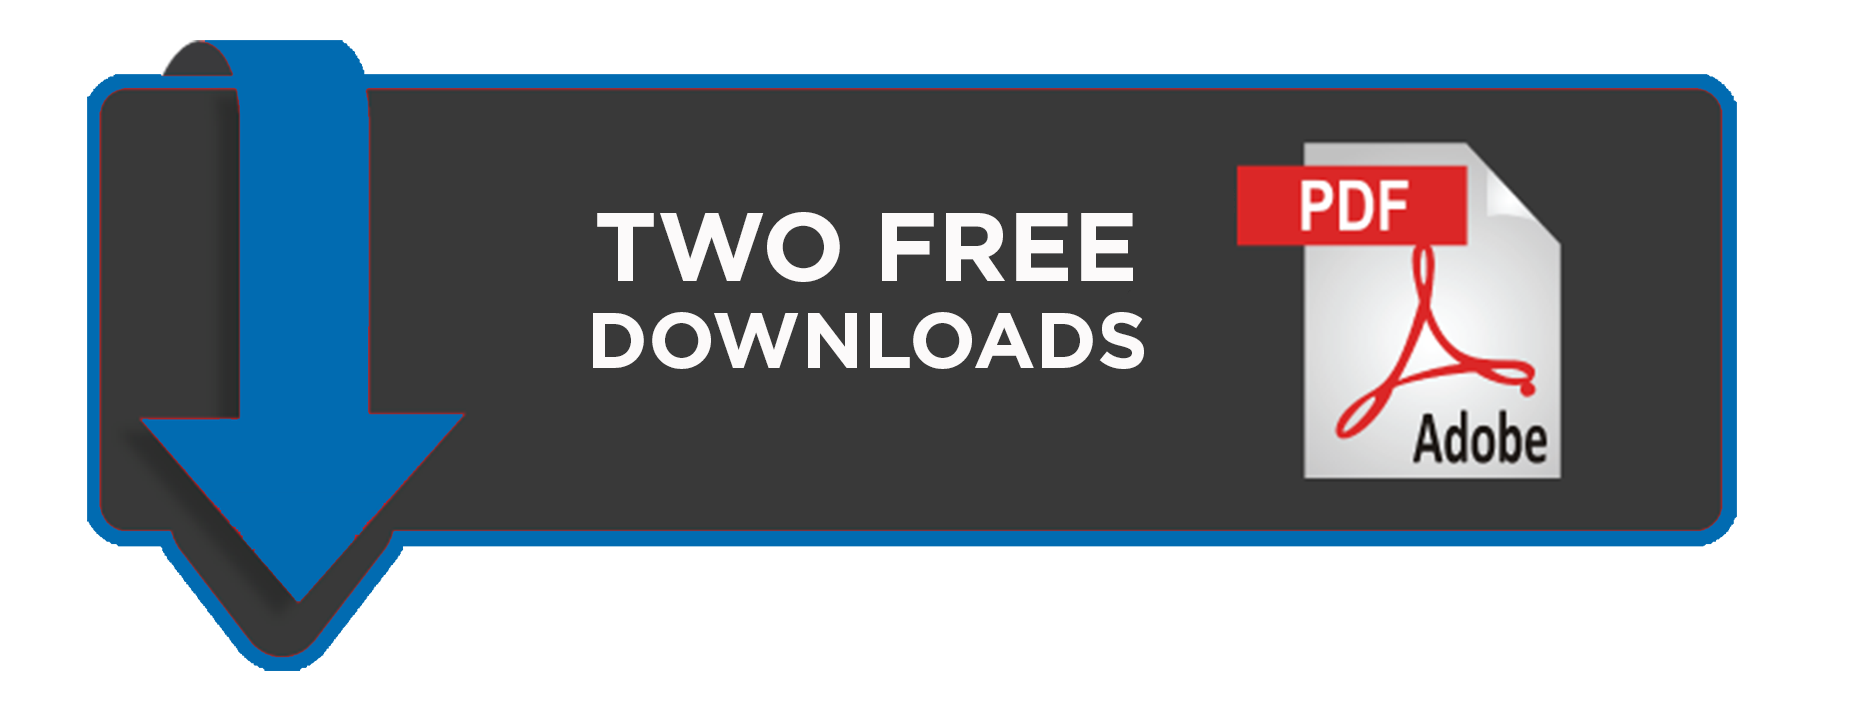 Two Free PDF Downloads